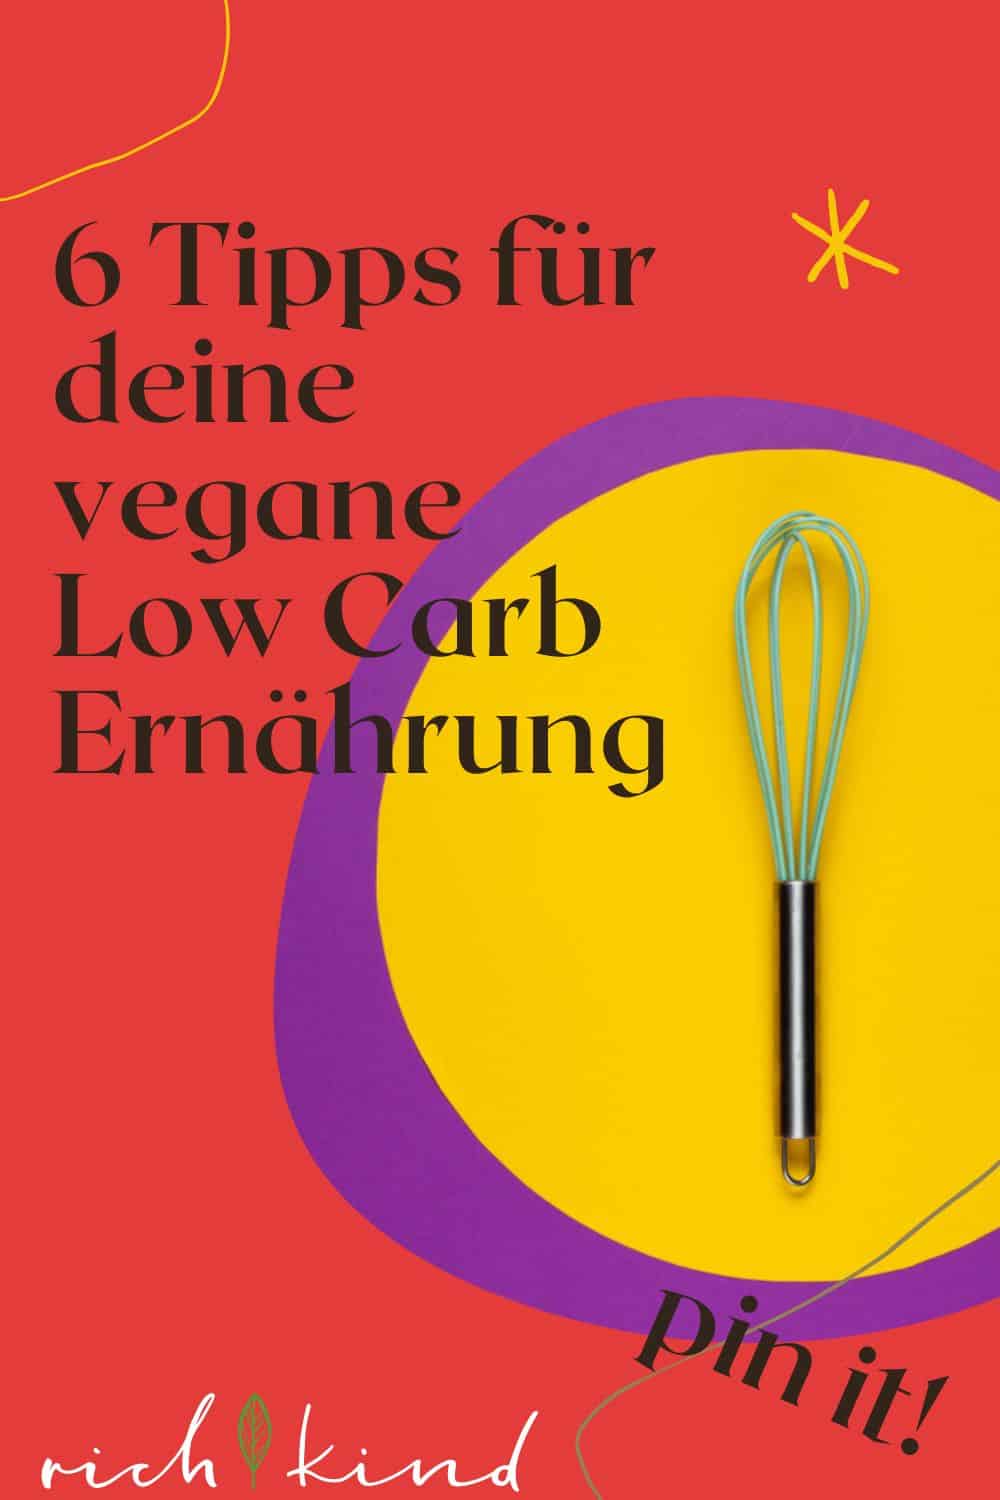 Tipps für vegane Low Carb Ernährung. Bild für Pinterest.